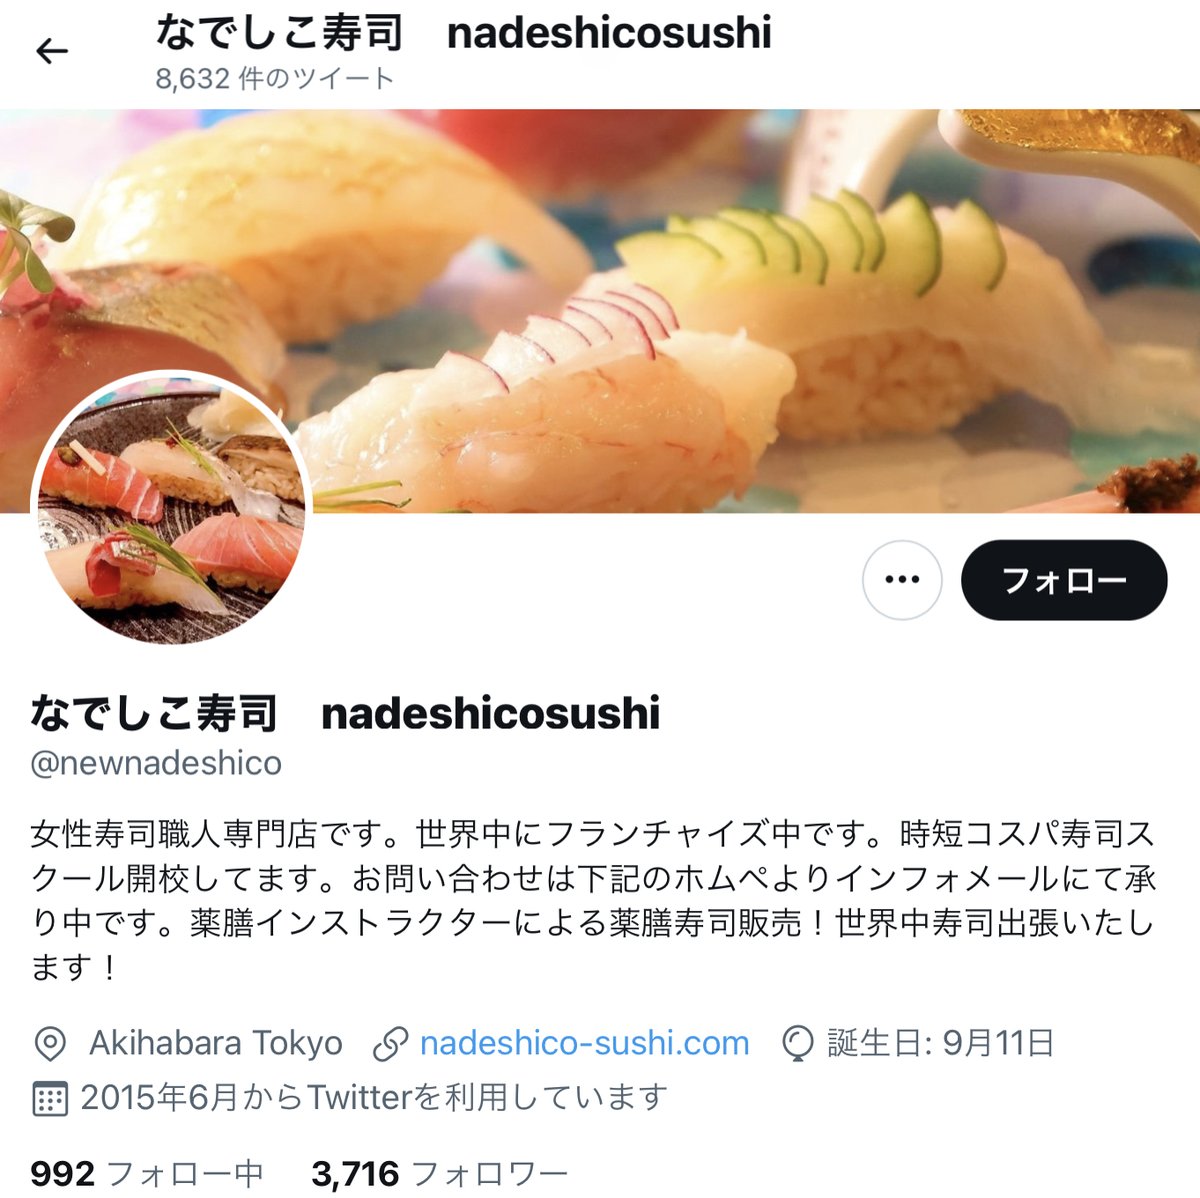 みんなの なでしこ寿司 口コミ 評判 食べたいランチ 夜ごはんがきっと見つかる ナウティスイーツ